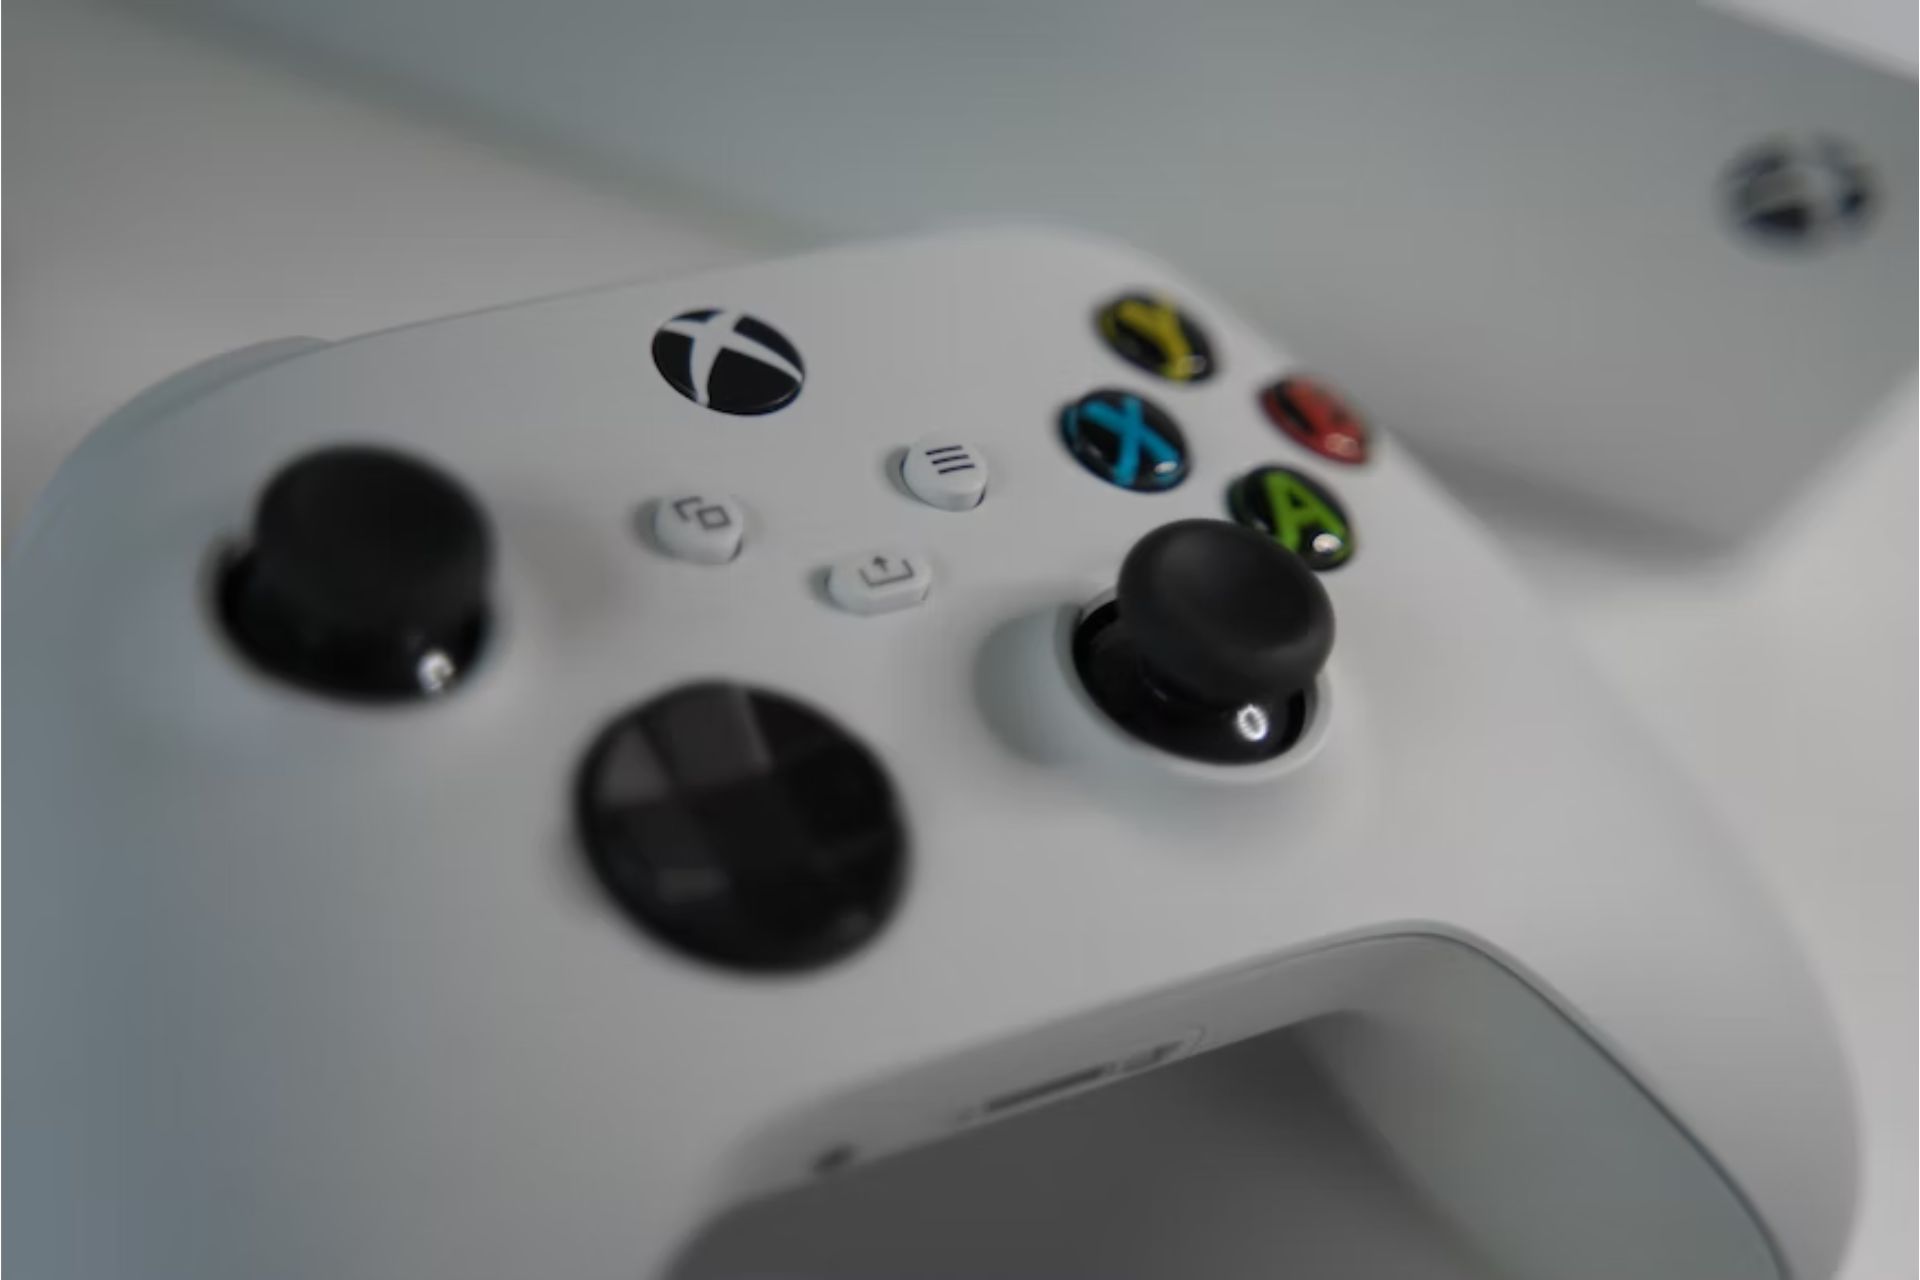 Xbox controller.